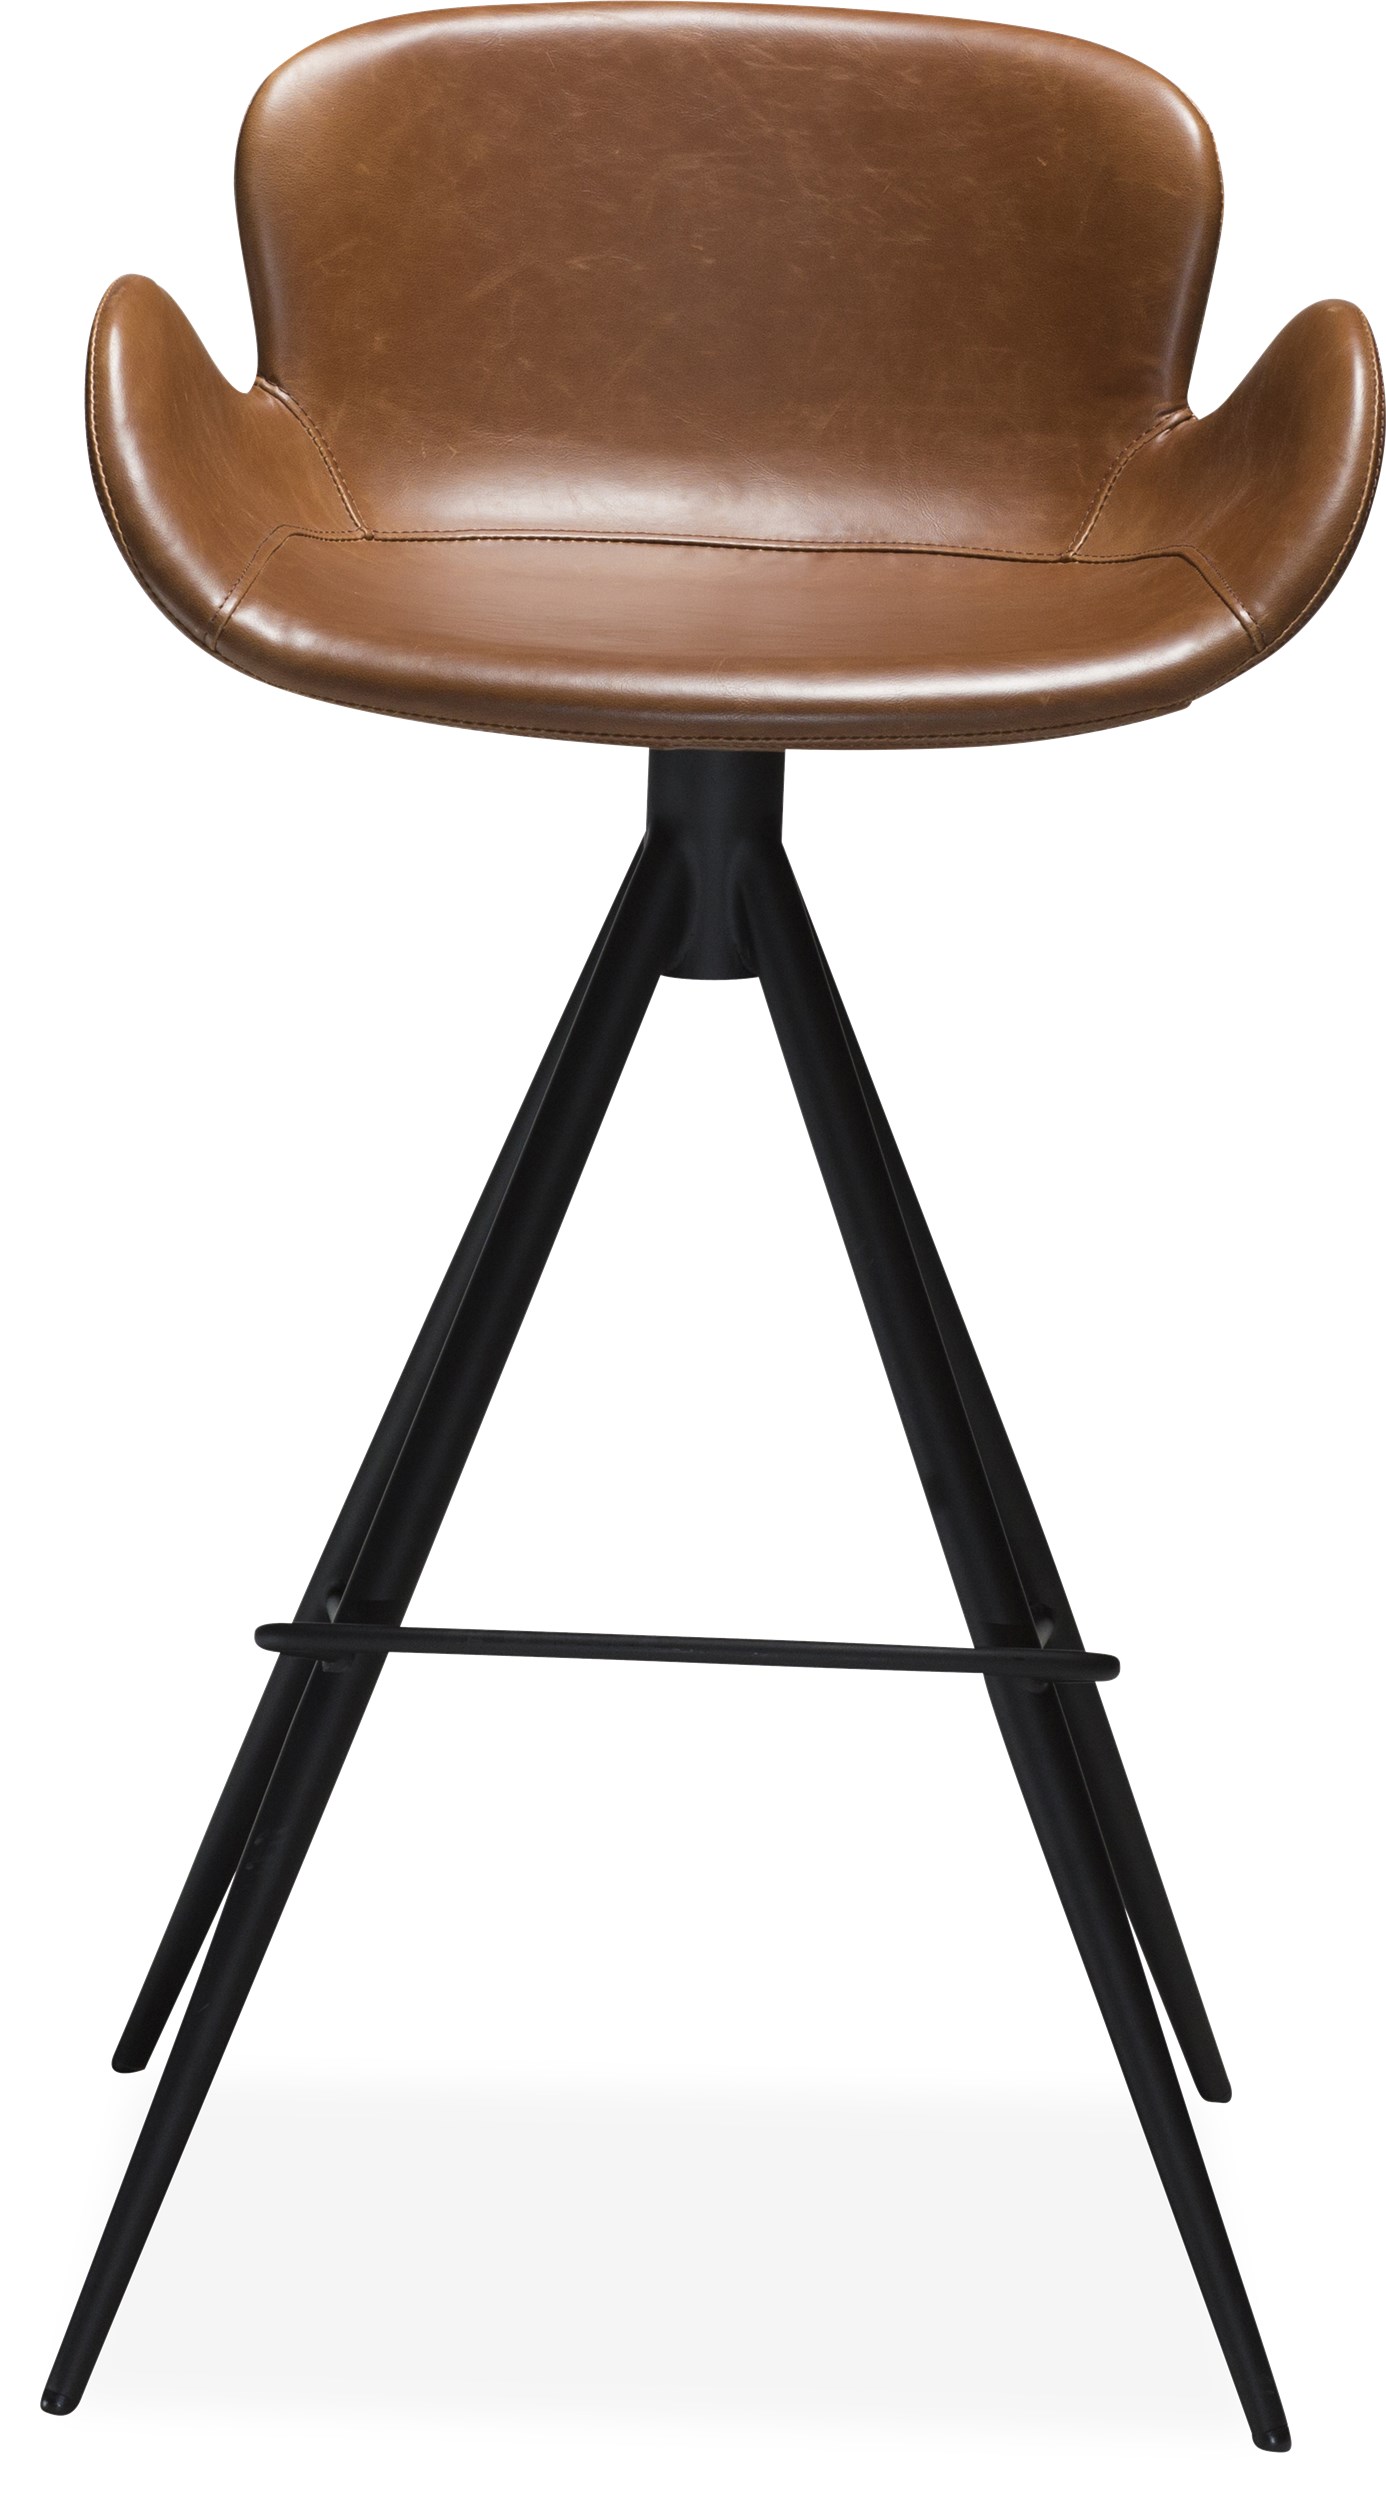 Deia Barstol - Sæde i vintage lysebrunt kunstlæder og runde ben i sortlakeret metal